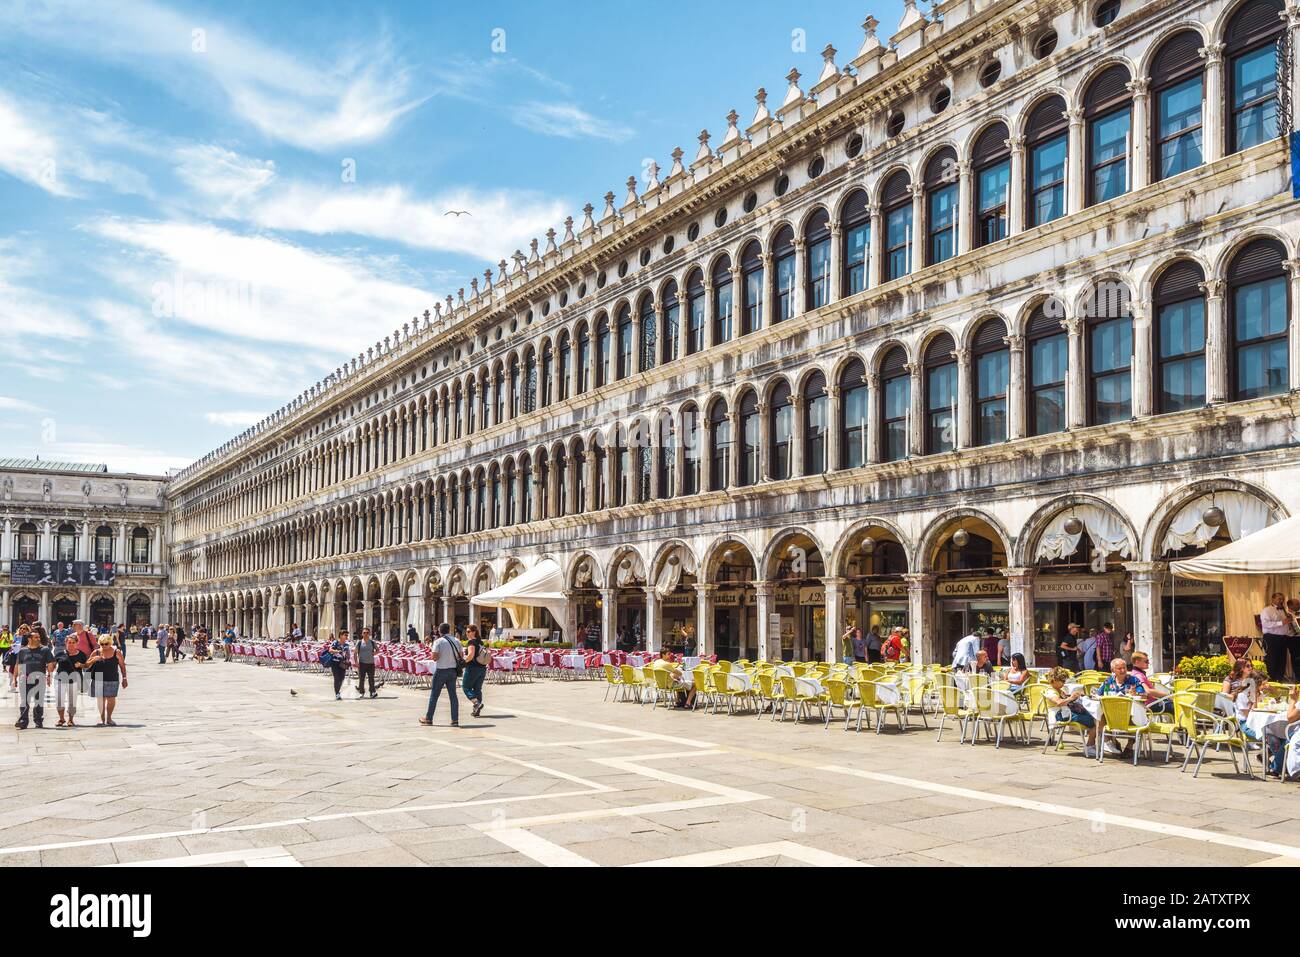 Venedig, Italien - 19. Mai 2017: Piazza San Marco oder Markusplatz in Venedig. Es ist die wichtigste Touristenattraktion Venedigs. Schöner historischer Archit Stockfoto